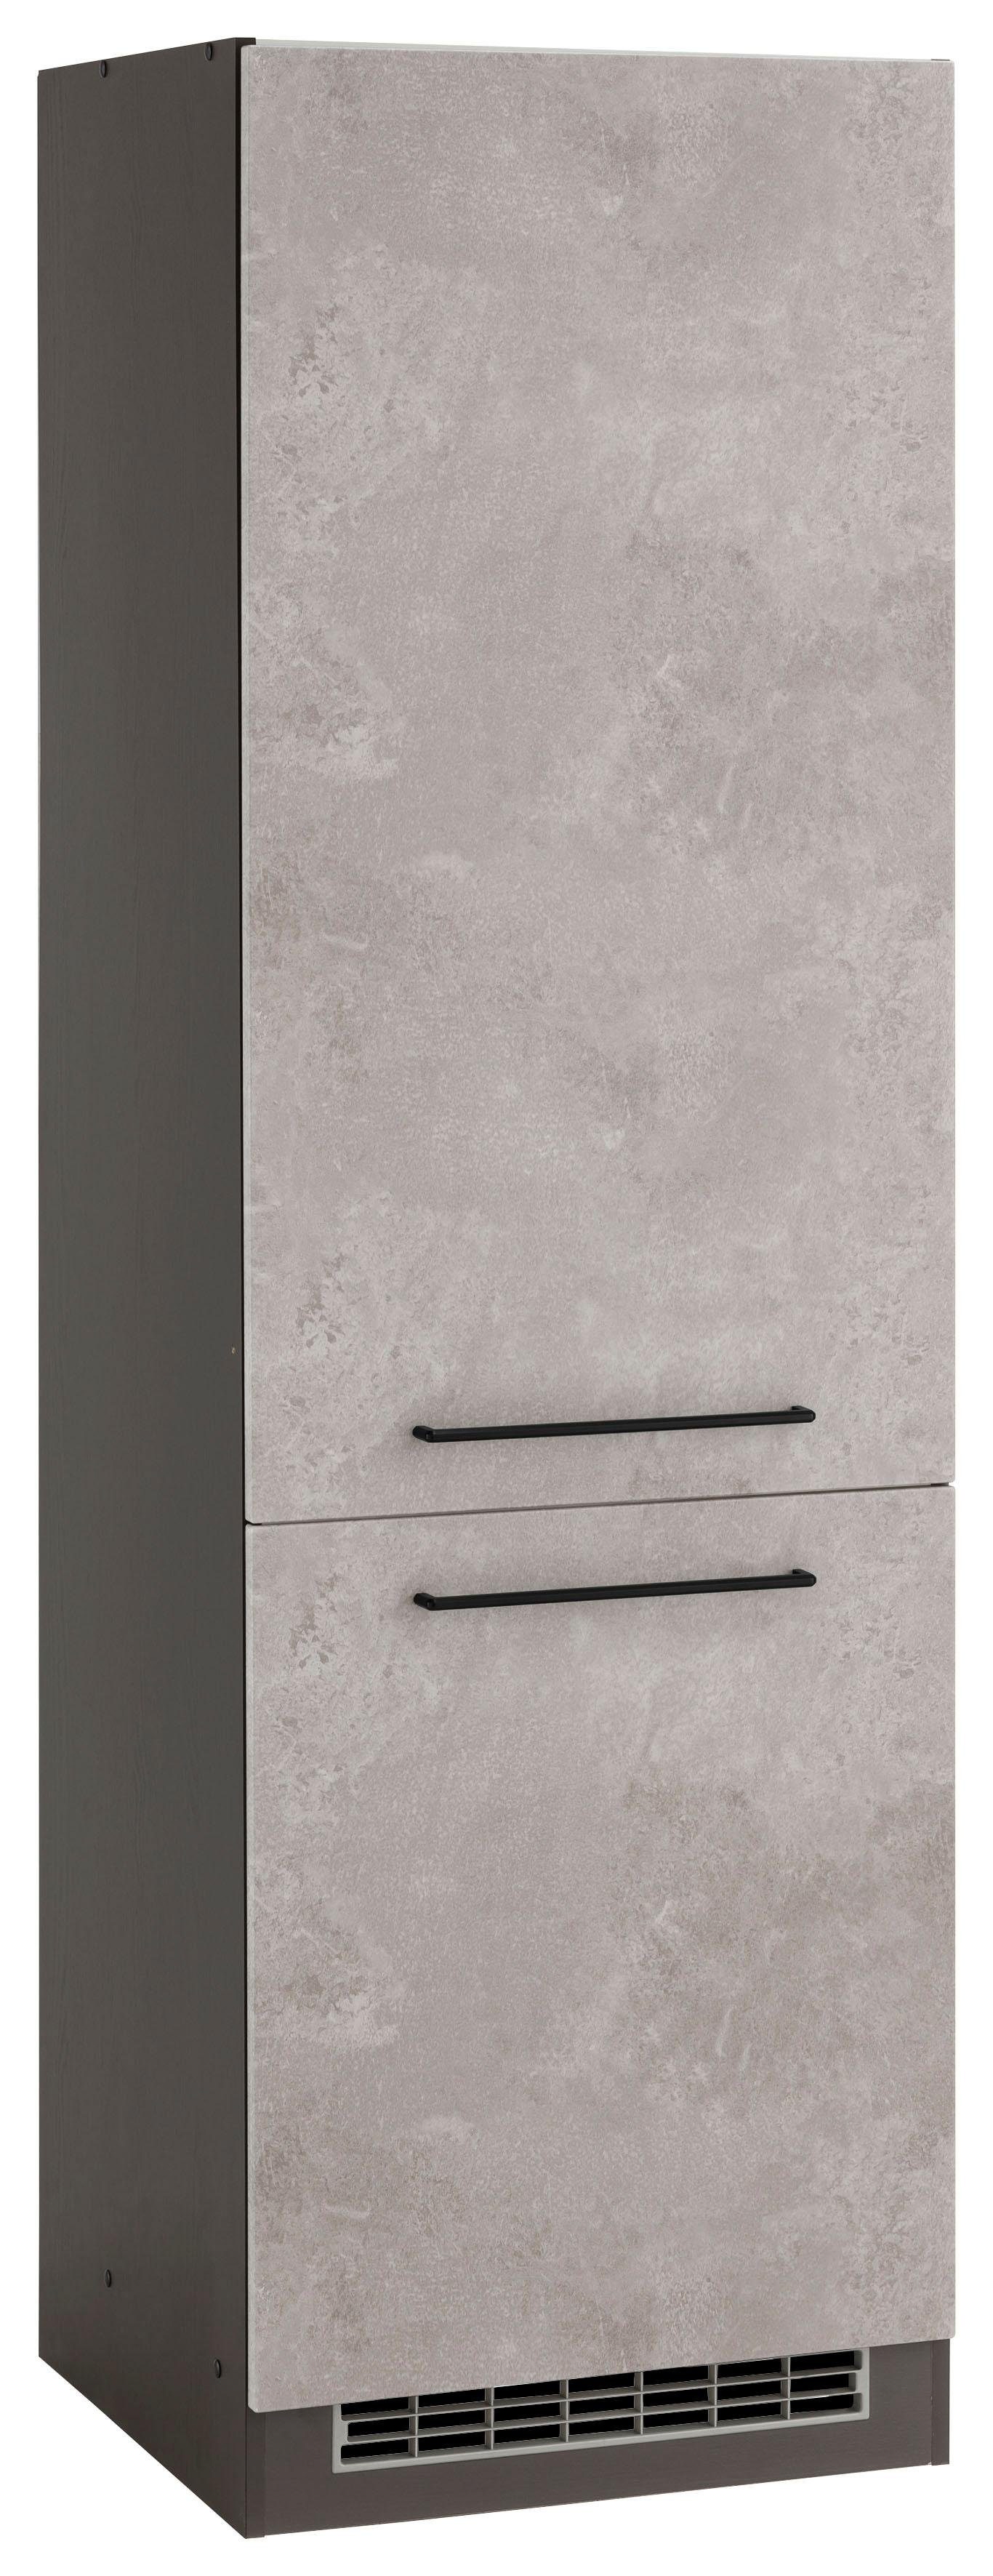 HELD MÖBEL Kühlumbauschrank Tulsa 60 cm breit, 200 cm hoch, 2 Türen, schwarzer Metallgriff, MDF Front betonfarben hell | grafit